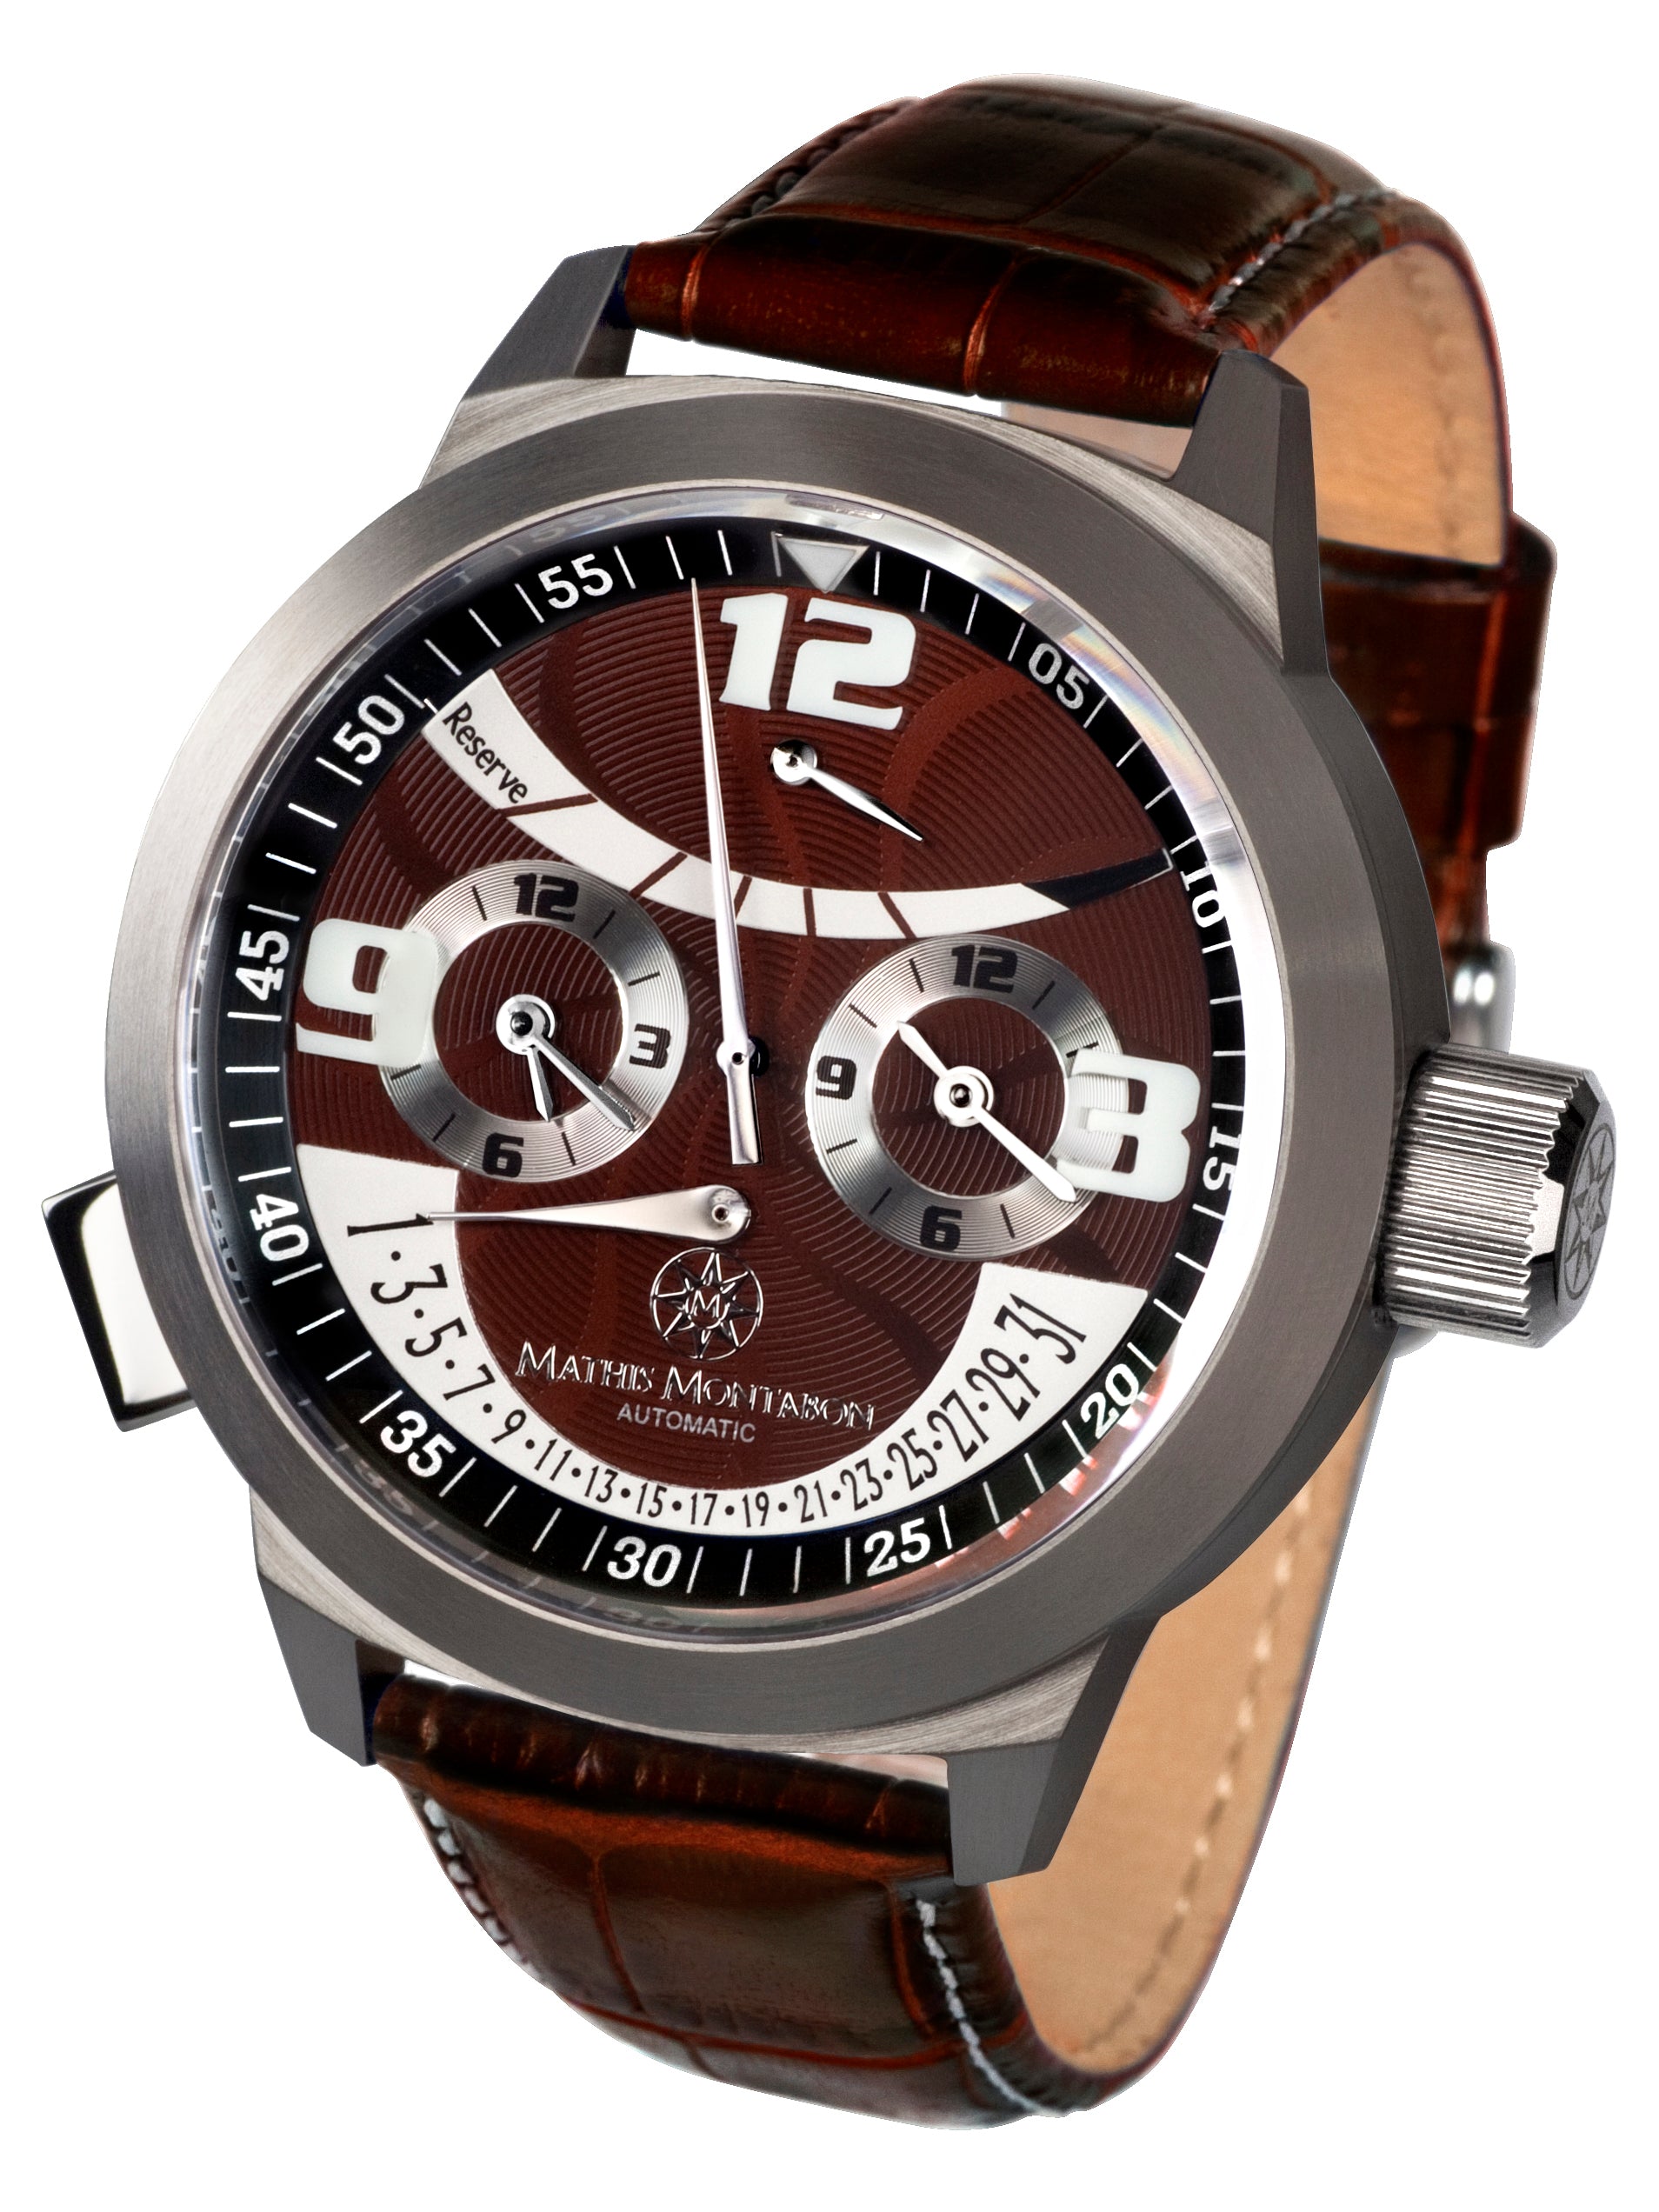 Automatic watches — Réserve de Marche — Mathis Montabon — braun